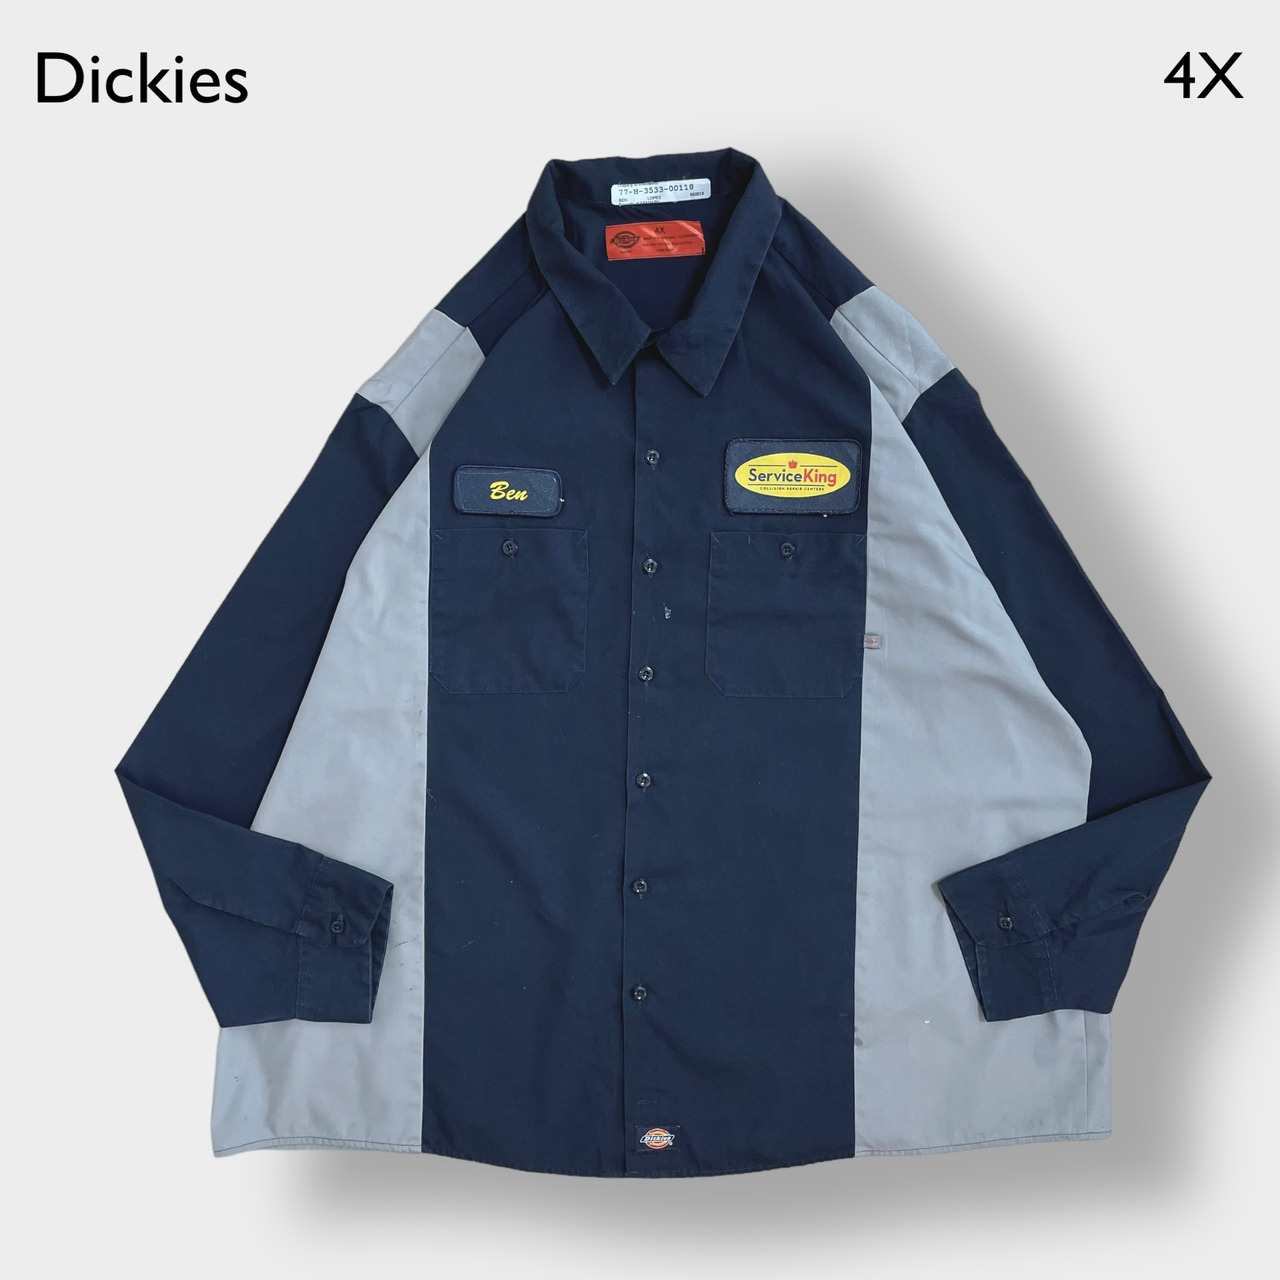 【Dickies】ワークシャツ 企業系 企業ロゴ ワンポイント ワッペン 4X ビッグシルエット 切替 ディッキーズ us古着